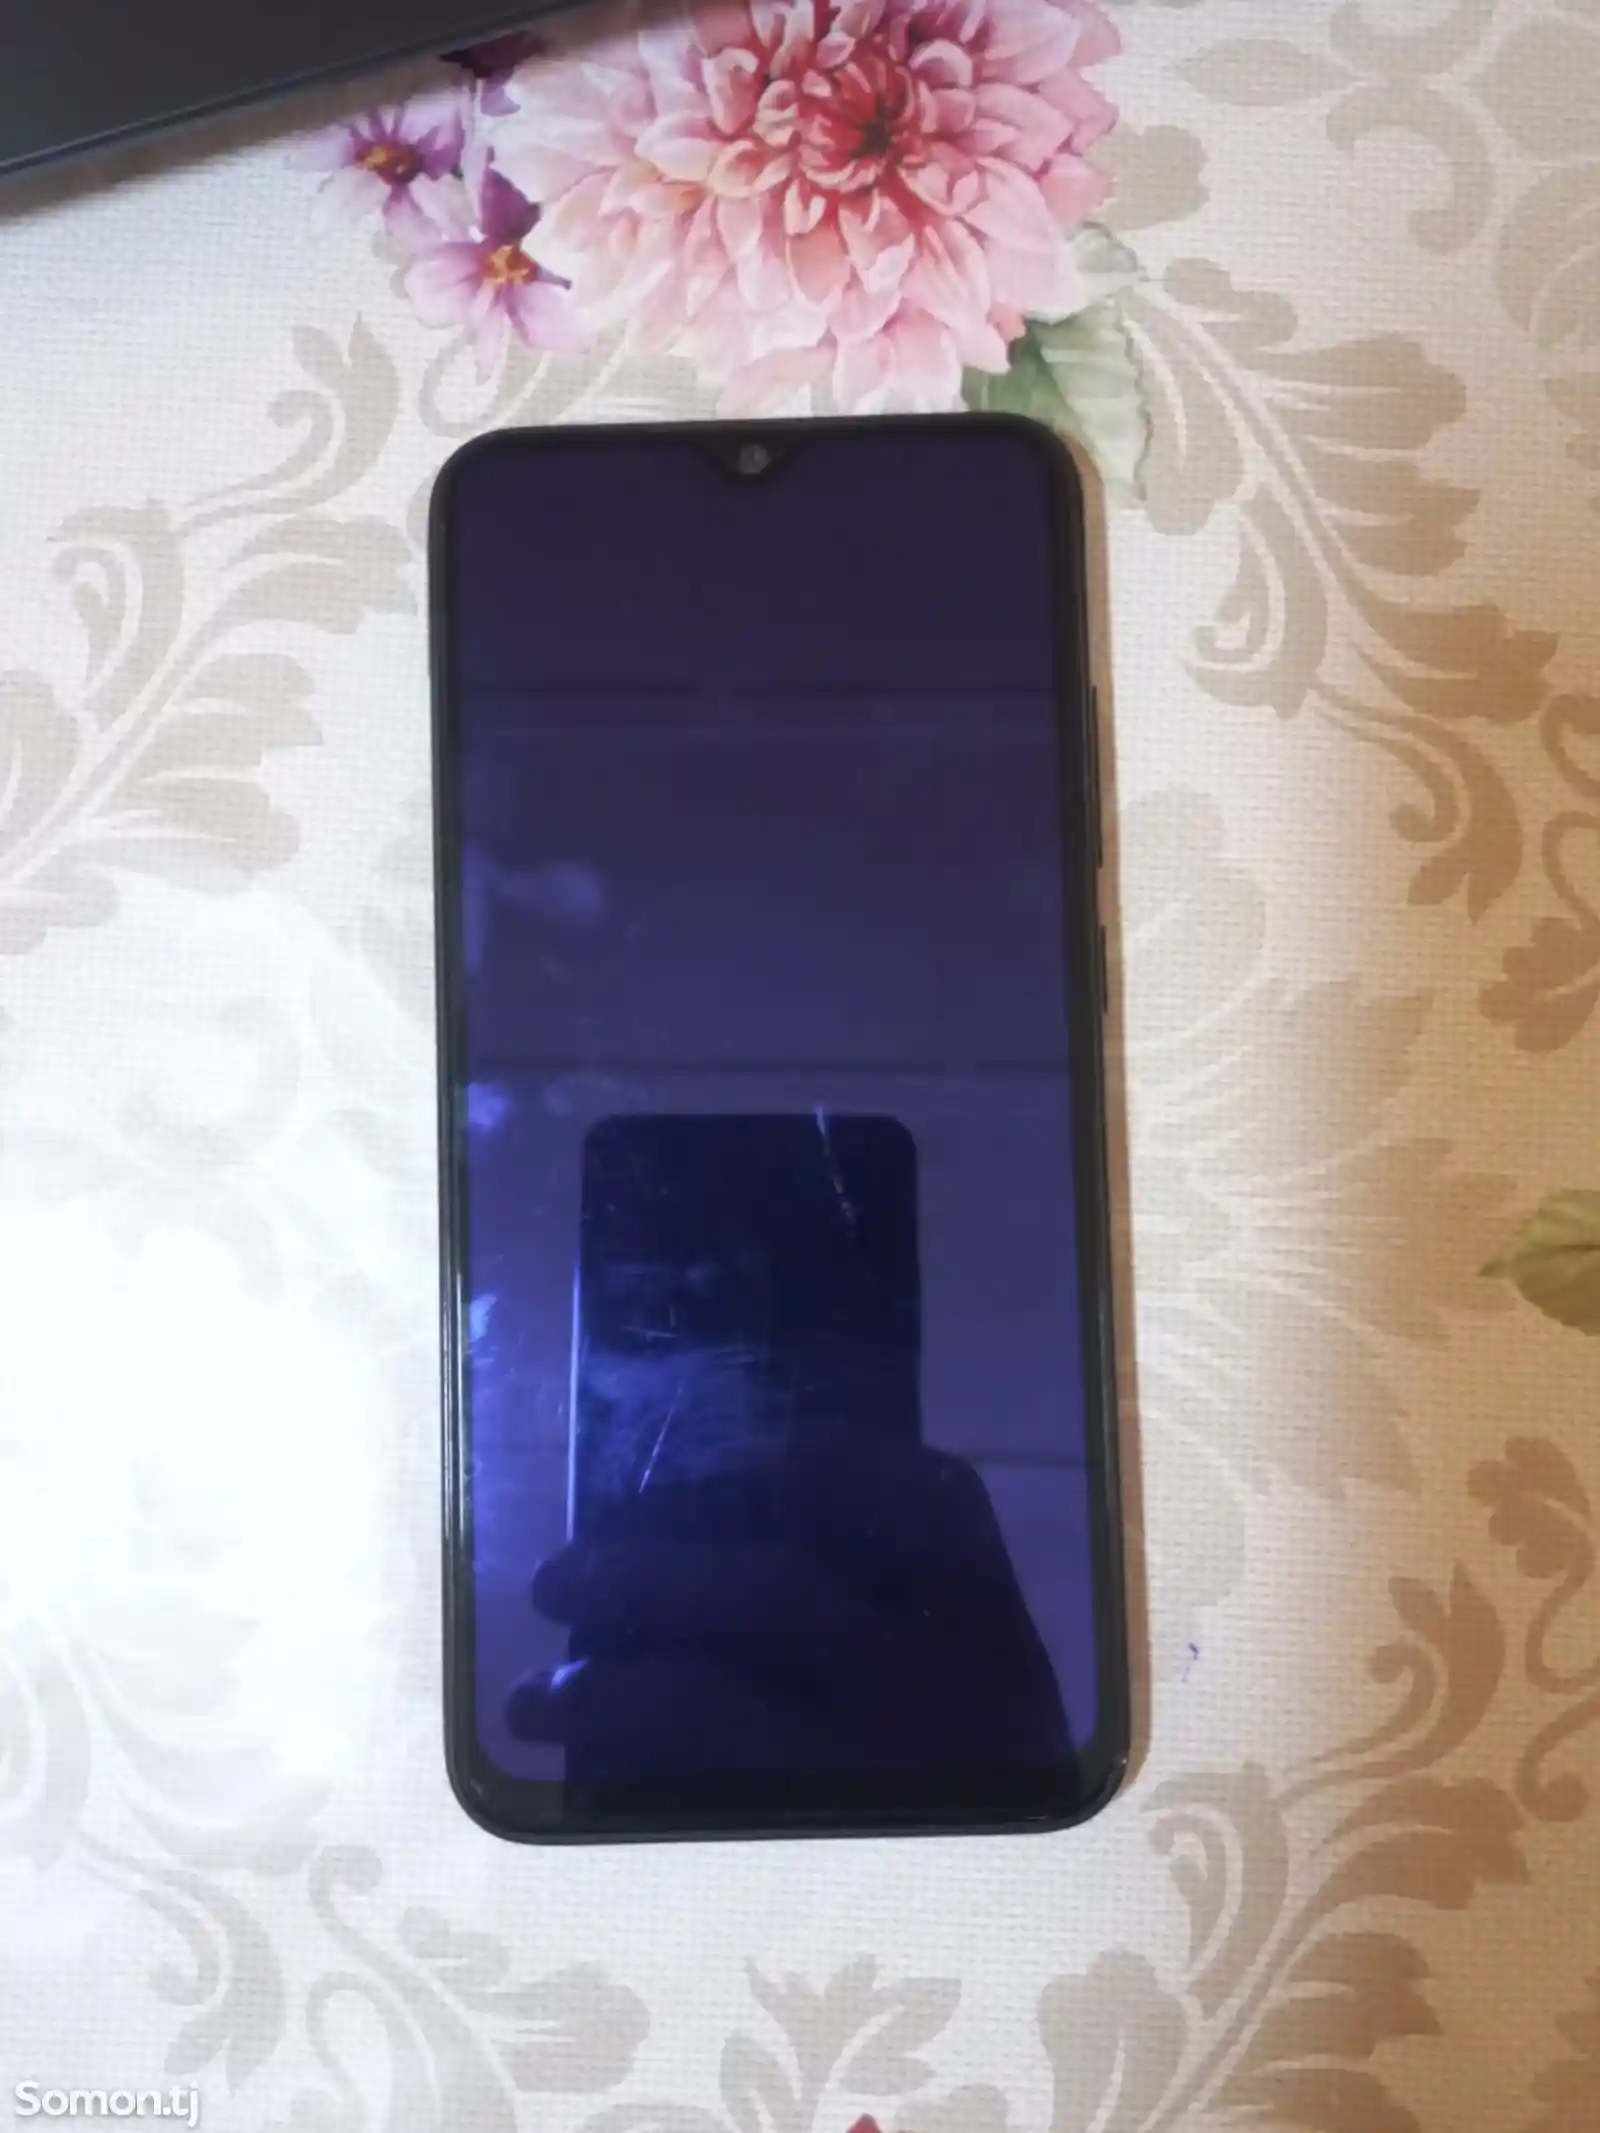 Xiaomi Redmi Note 8-5